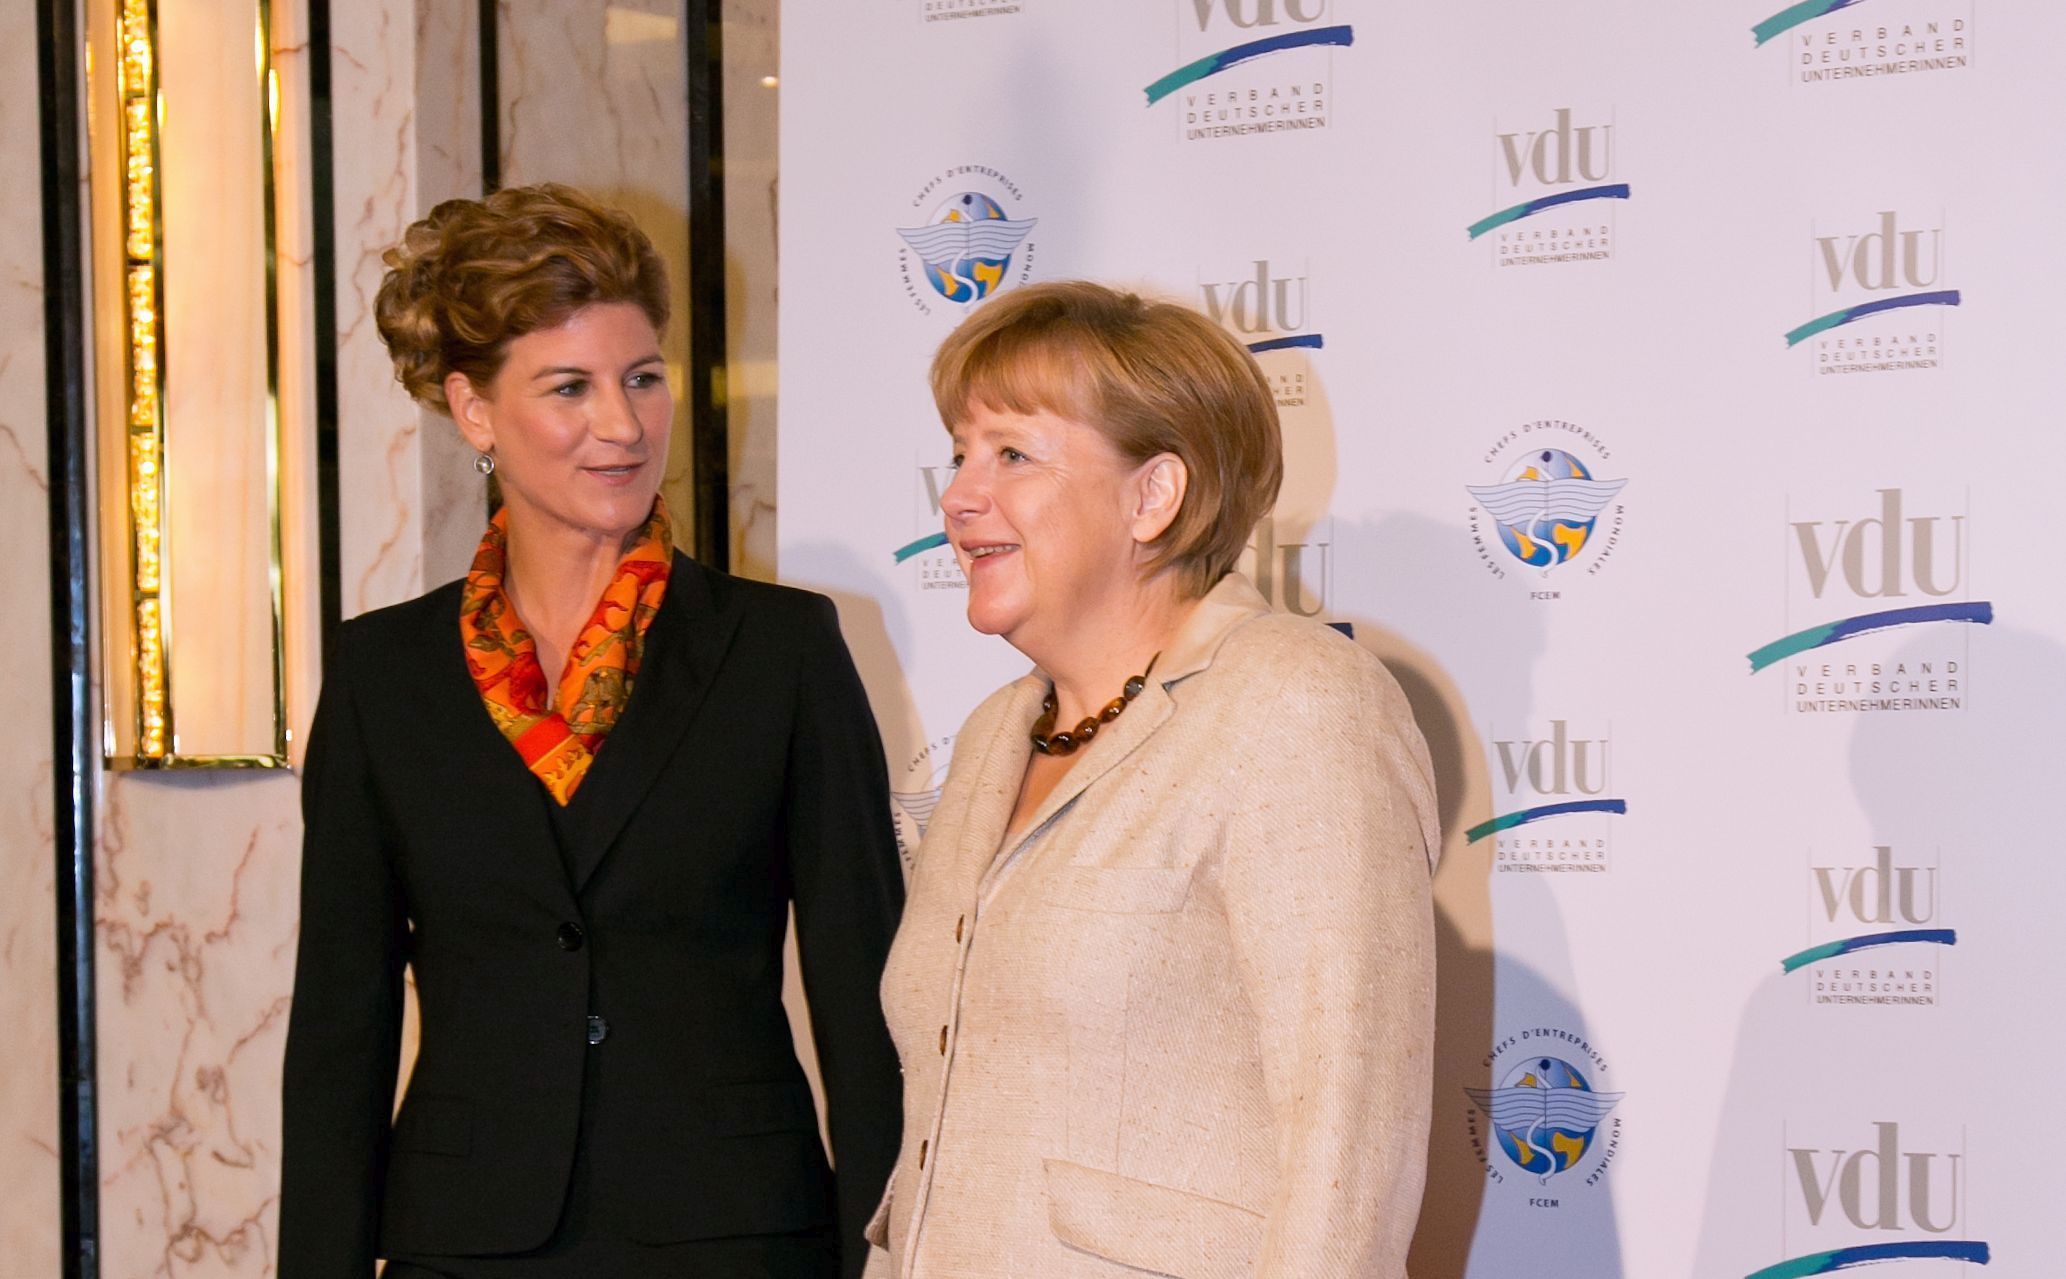 VdU-Präsidentin Stephanie Bschorr mit Bundeskanzlerin Angela Merkel beim FCEM-Kongress im September 2012 mit 600 Unternehmerinnen aus 42 Ländern in Berlin